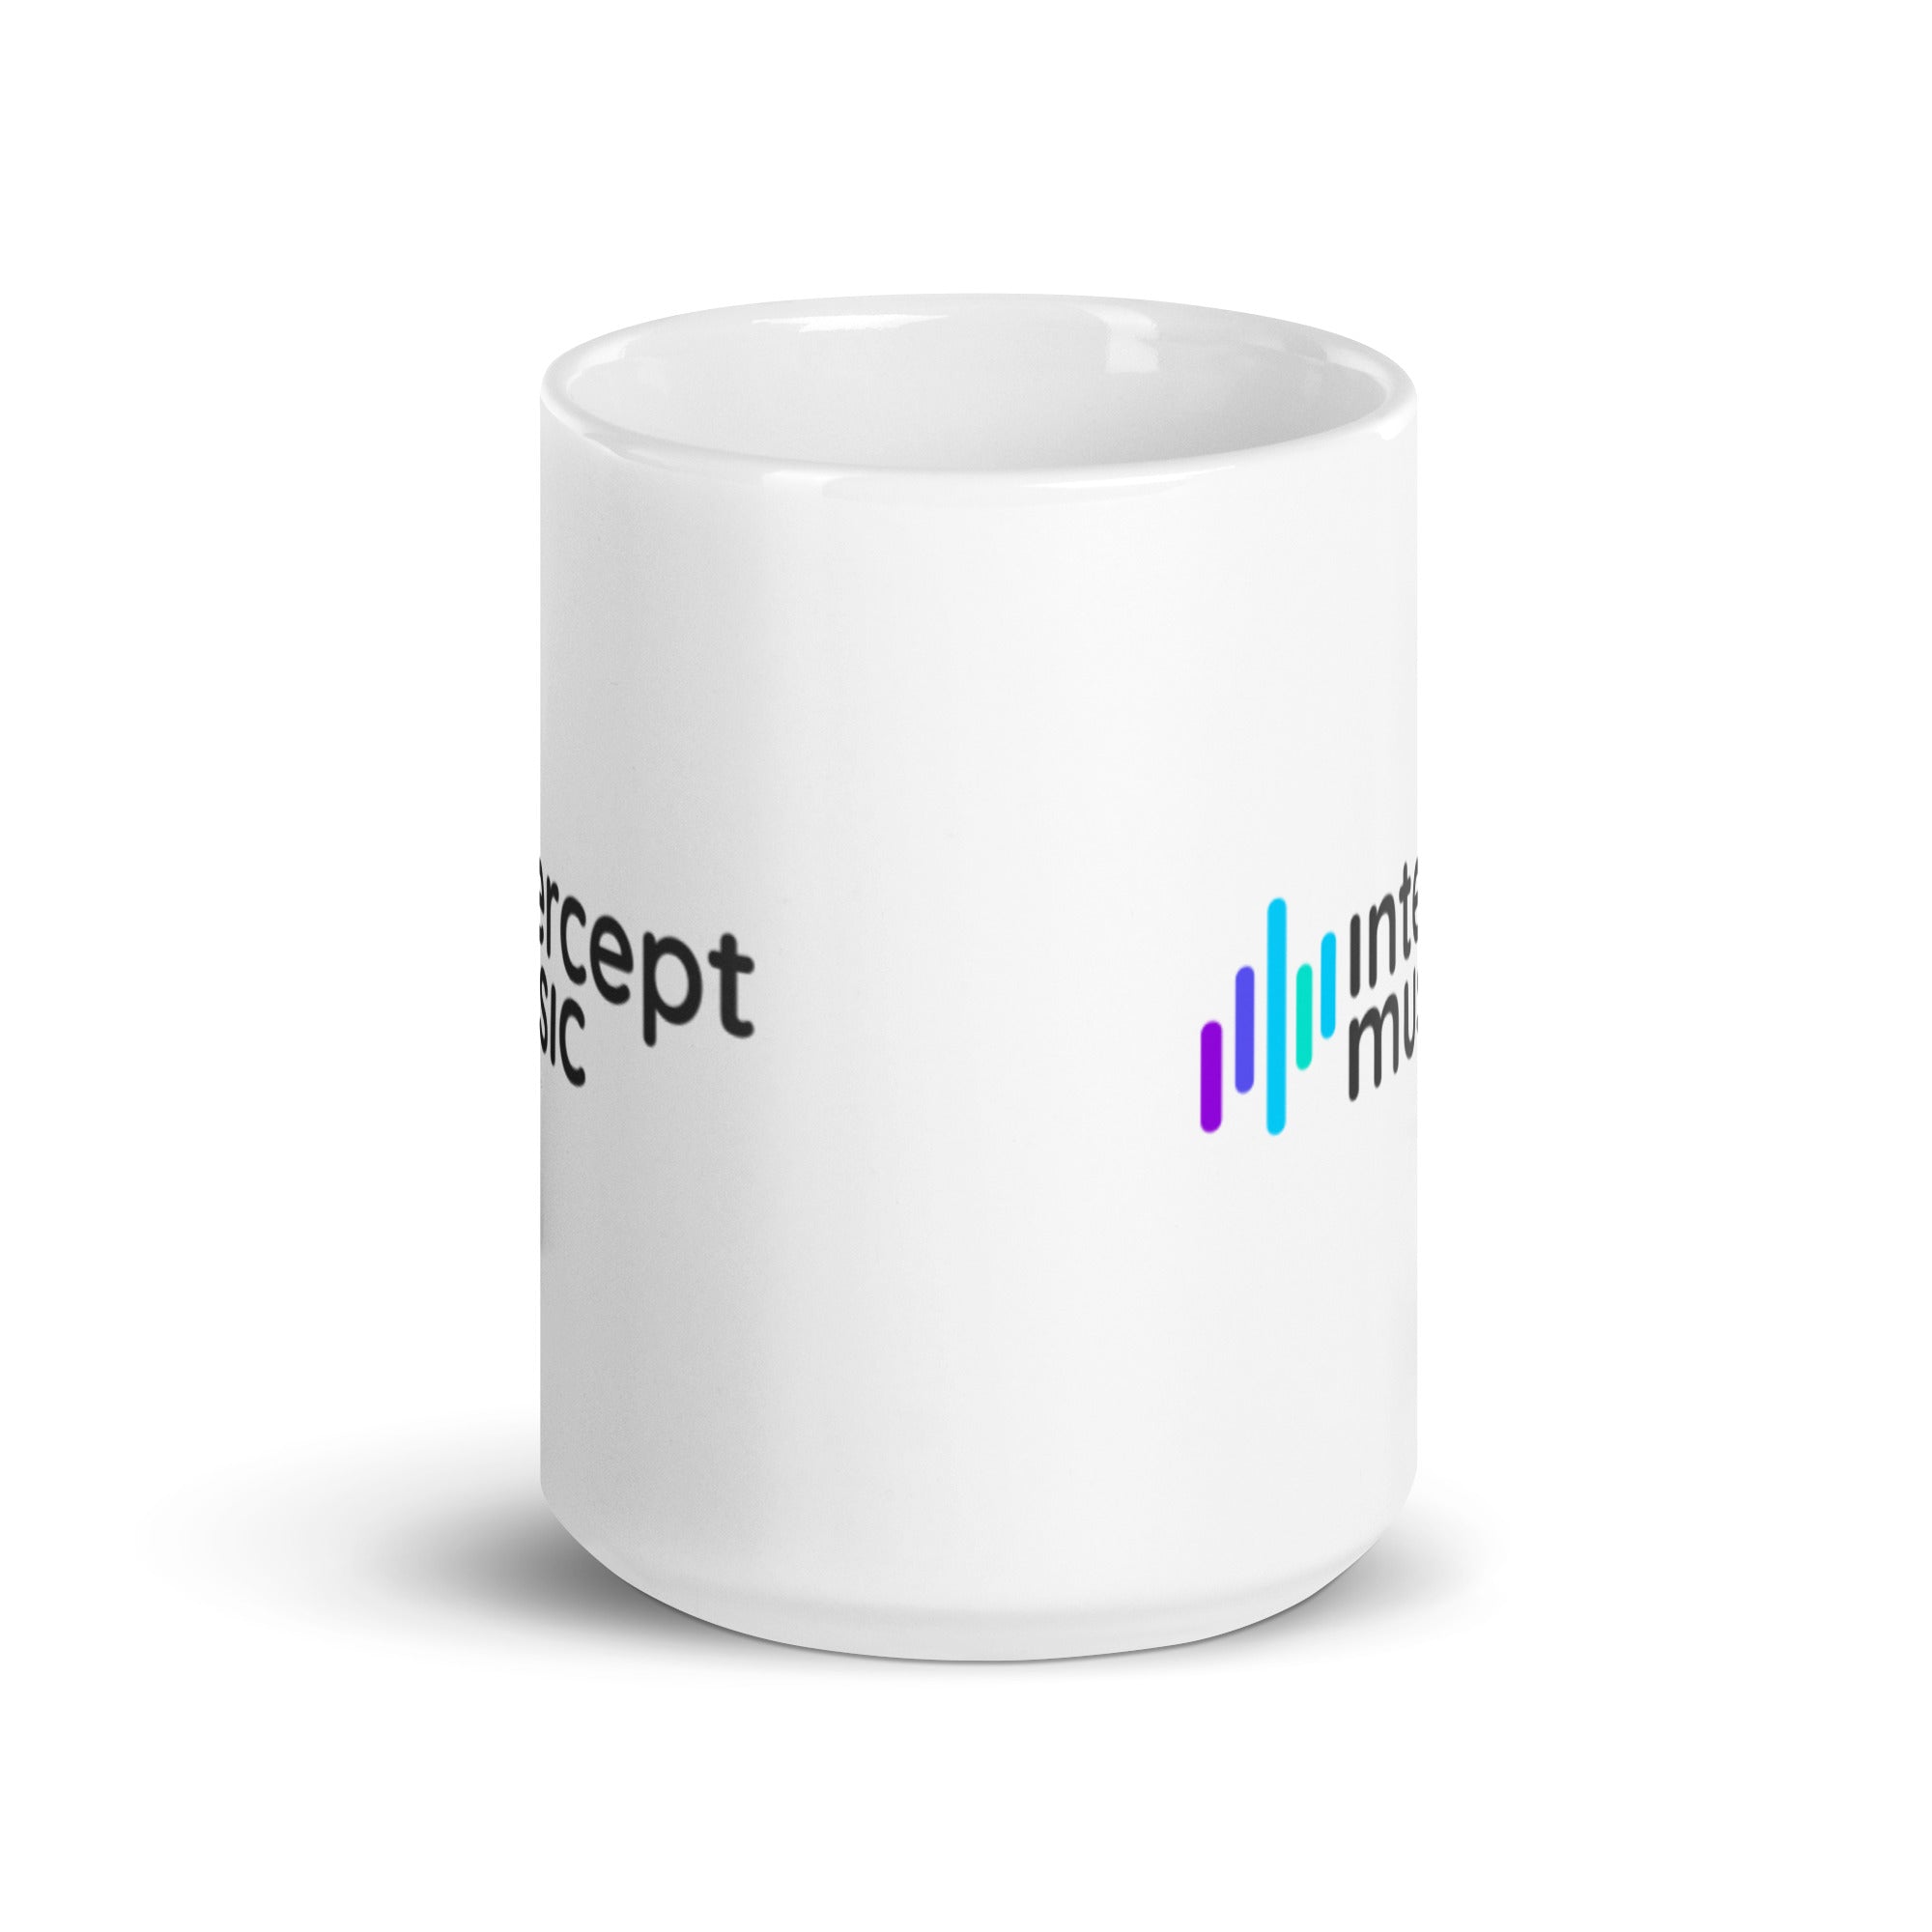 Intercept Music - White glossy mug